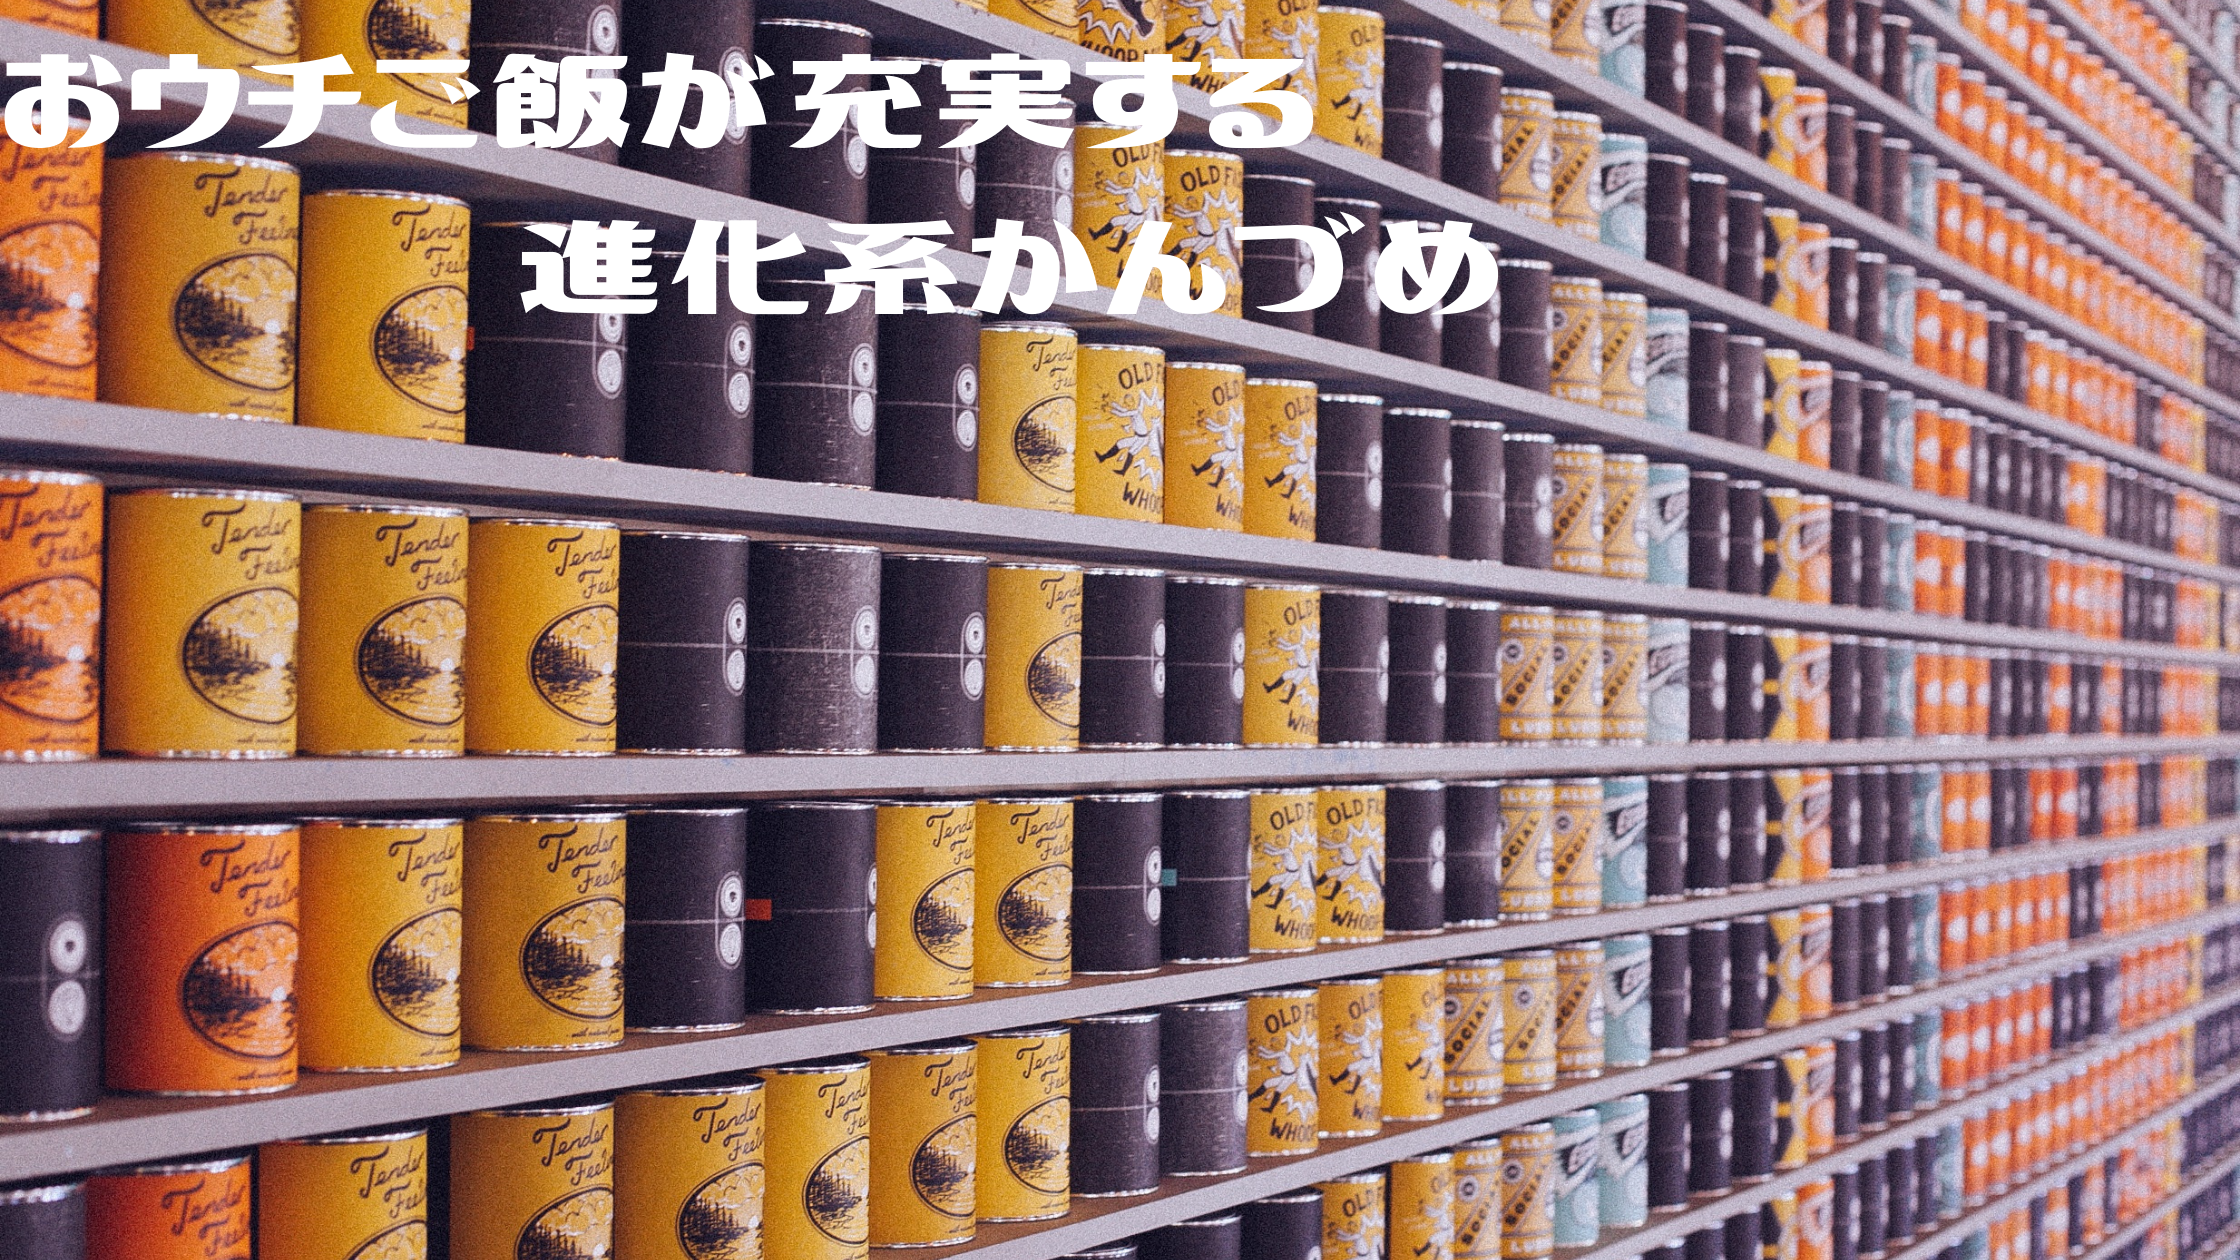 【ZIP】進化系かんづめ『高級缶詰』『世界初の缶詰』『本格的なご飯缶詰』お取り寄せ